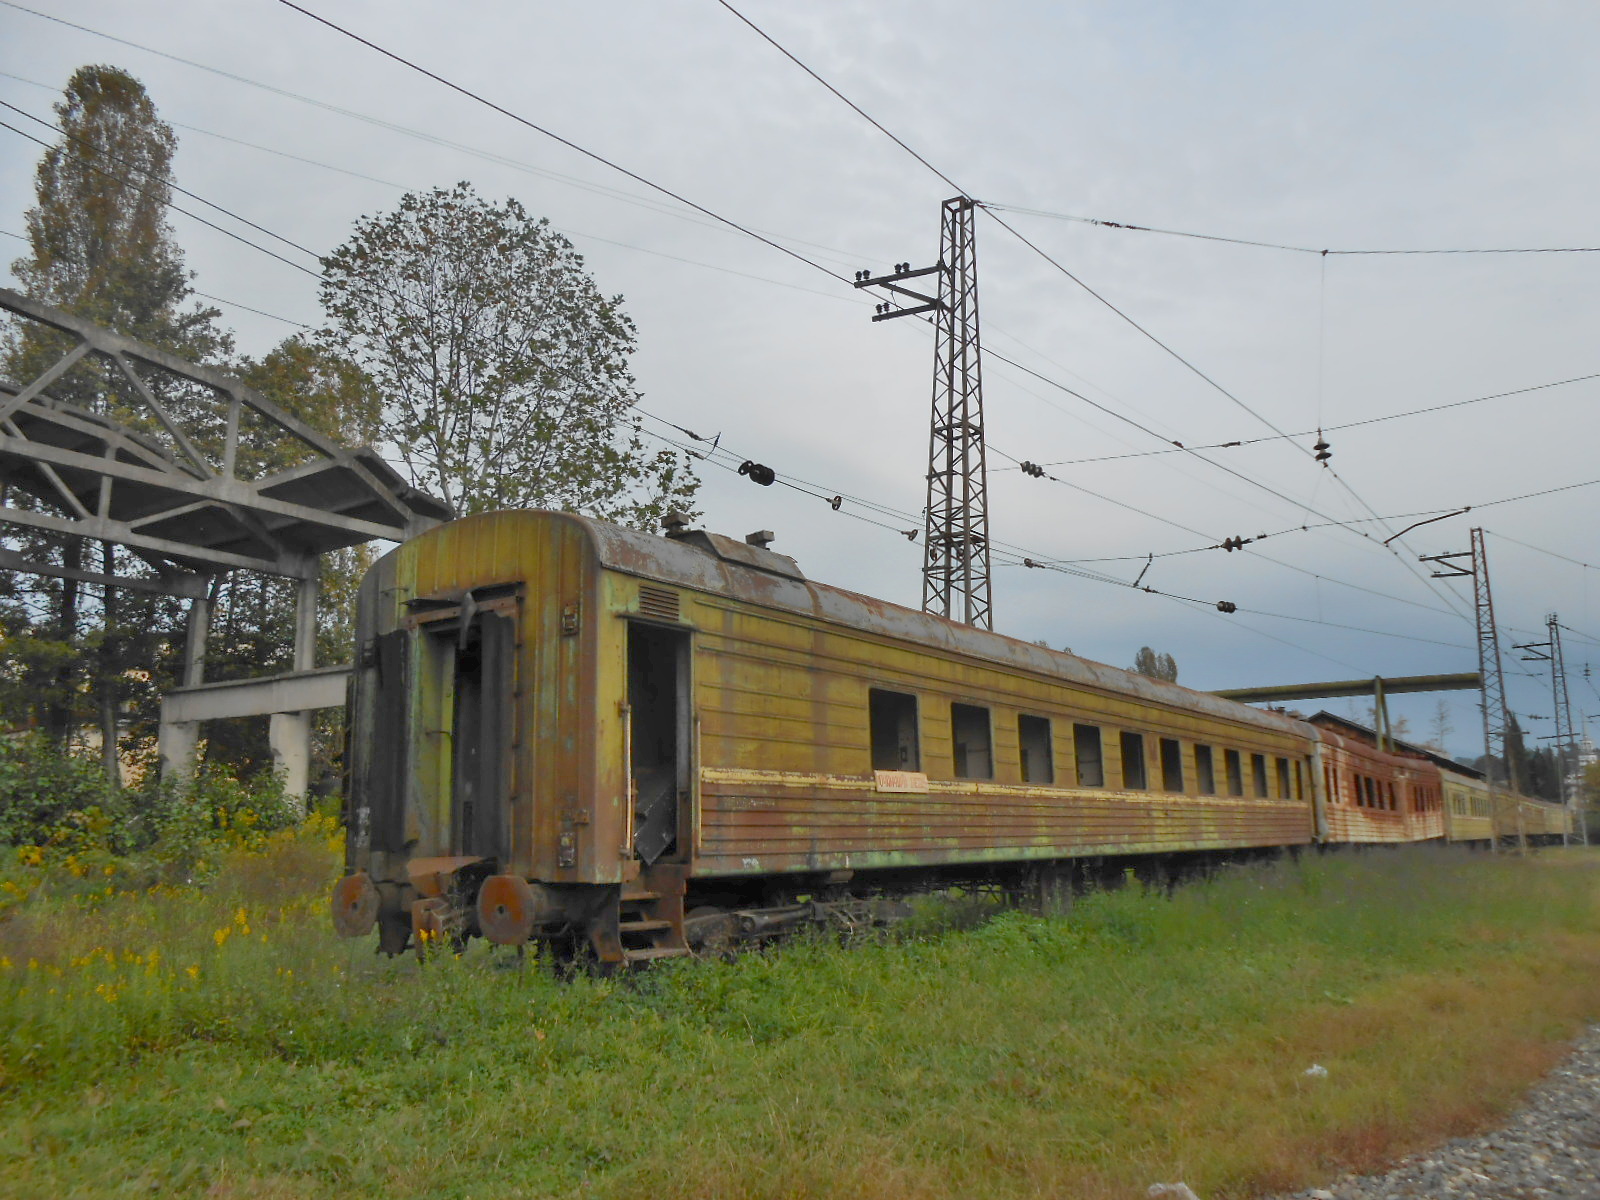 Абхазская железная дорога — фотографии, сделанные в 2014 году (часть 9)